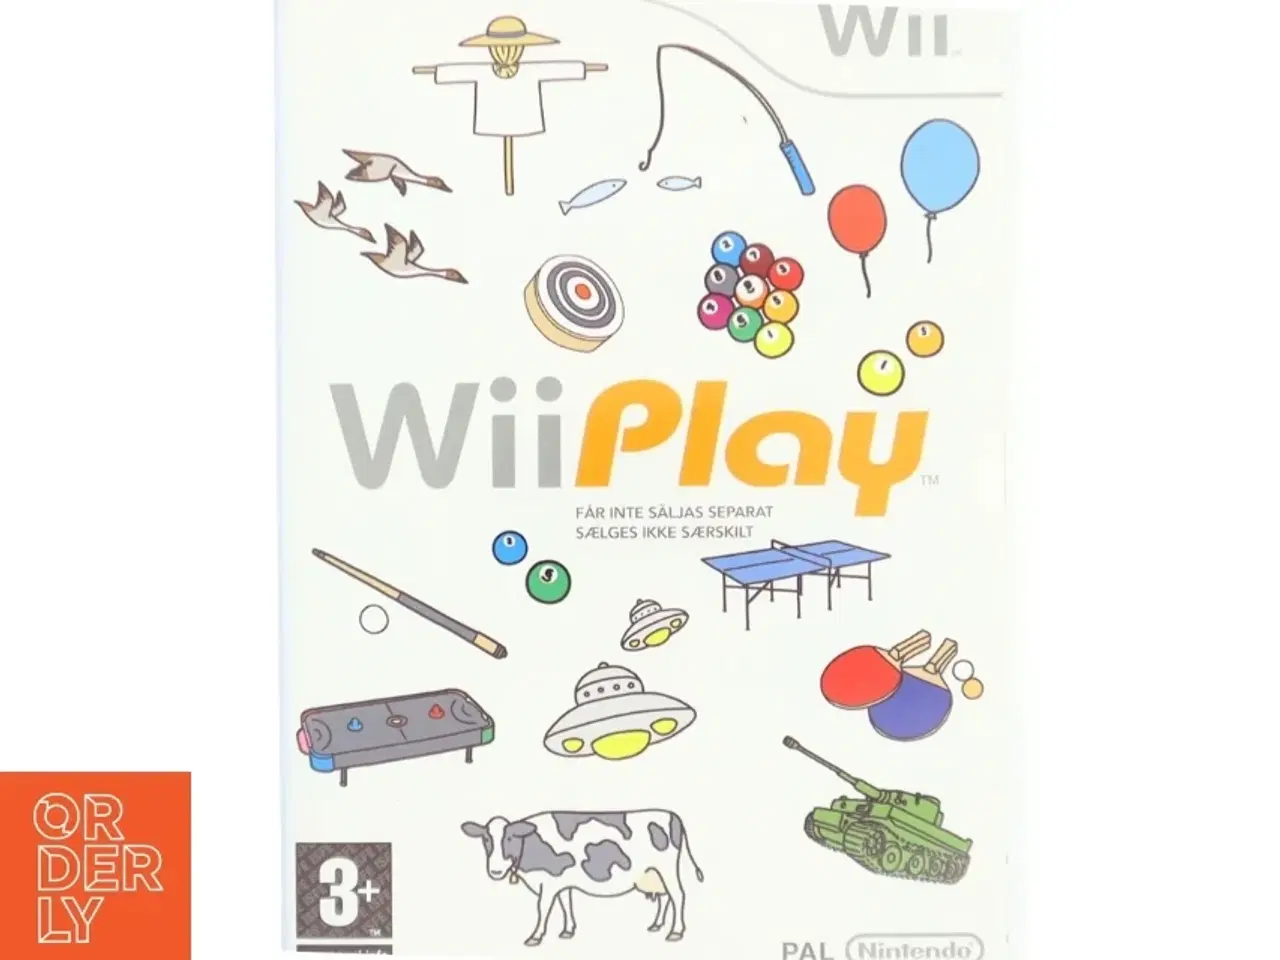 Billede 1 - Wii Play spil til Nintendo Wii fra Nintendo